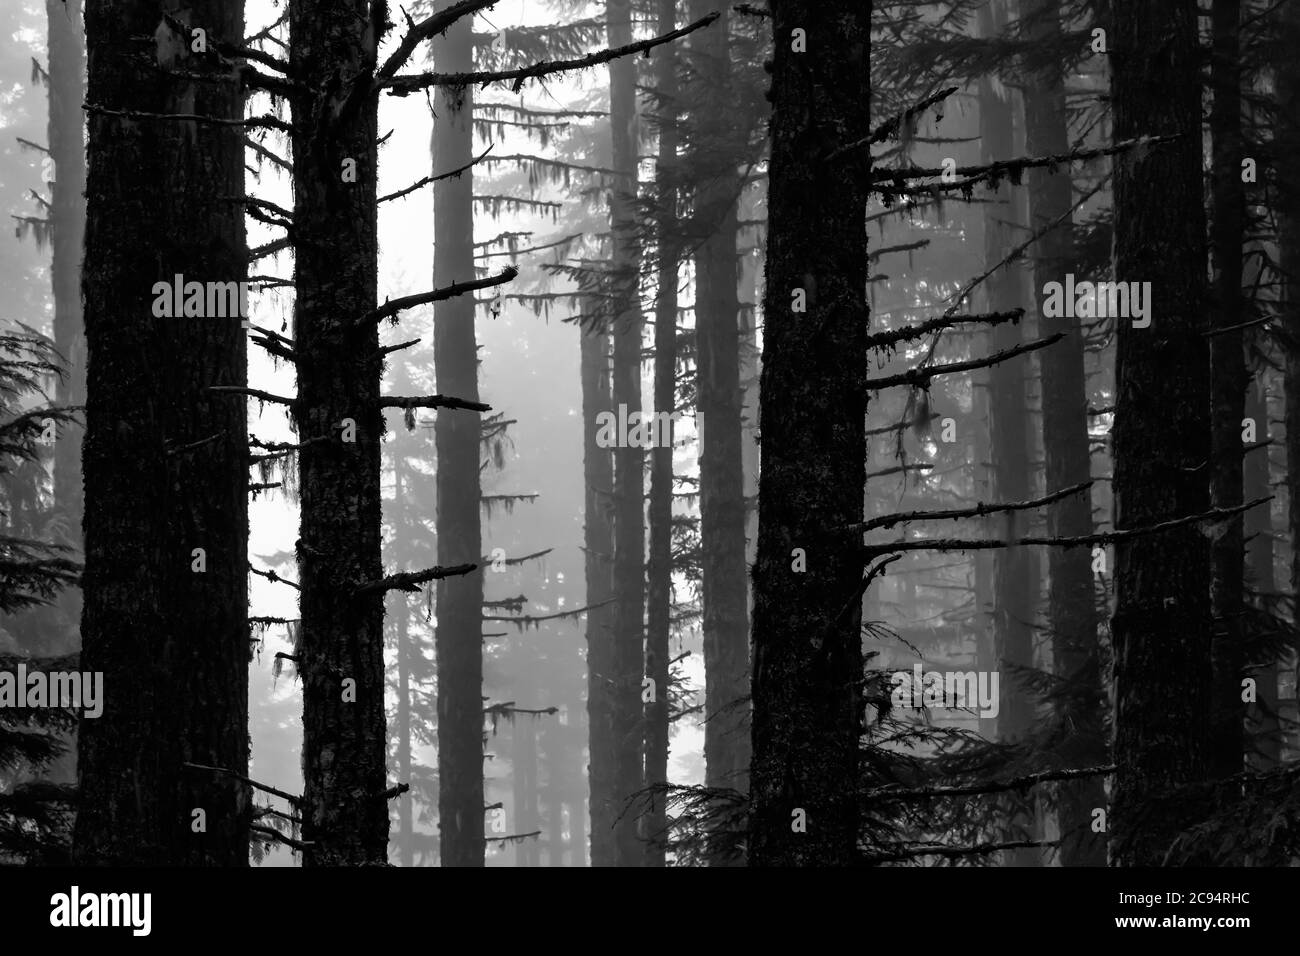 Foresta di conifere in una mistica mattinata estiva a Gifford Pinchot National Forest, Washington state, USA Foto Stock